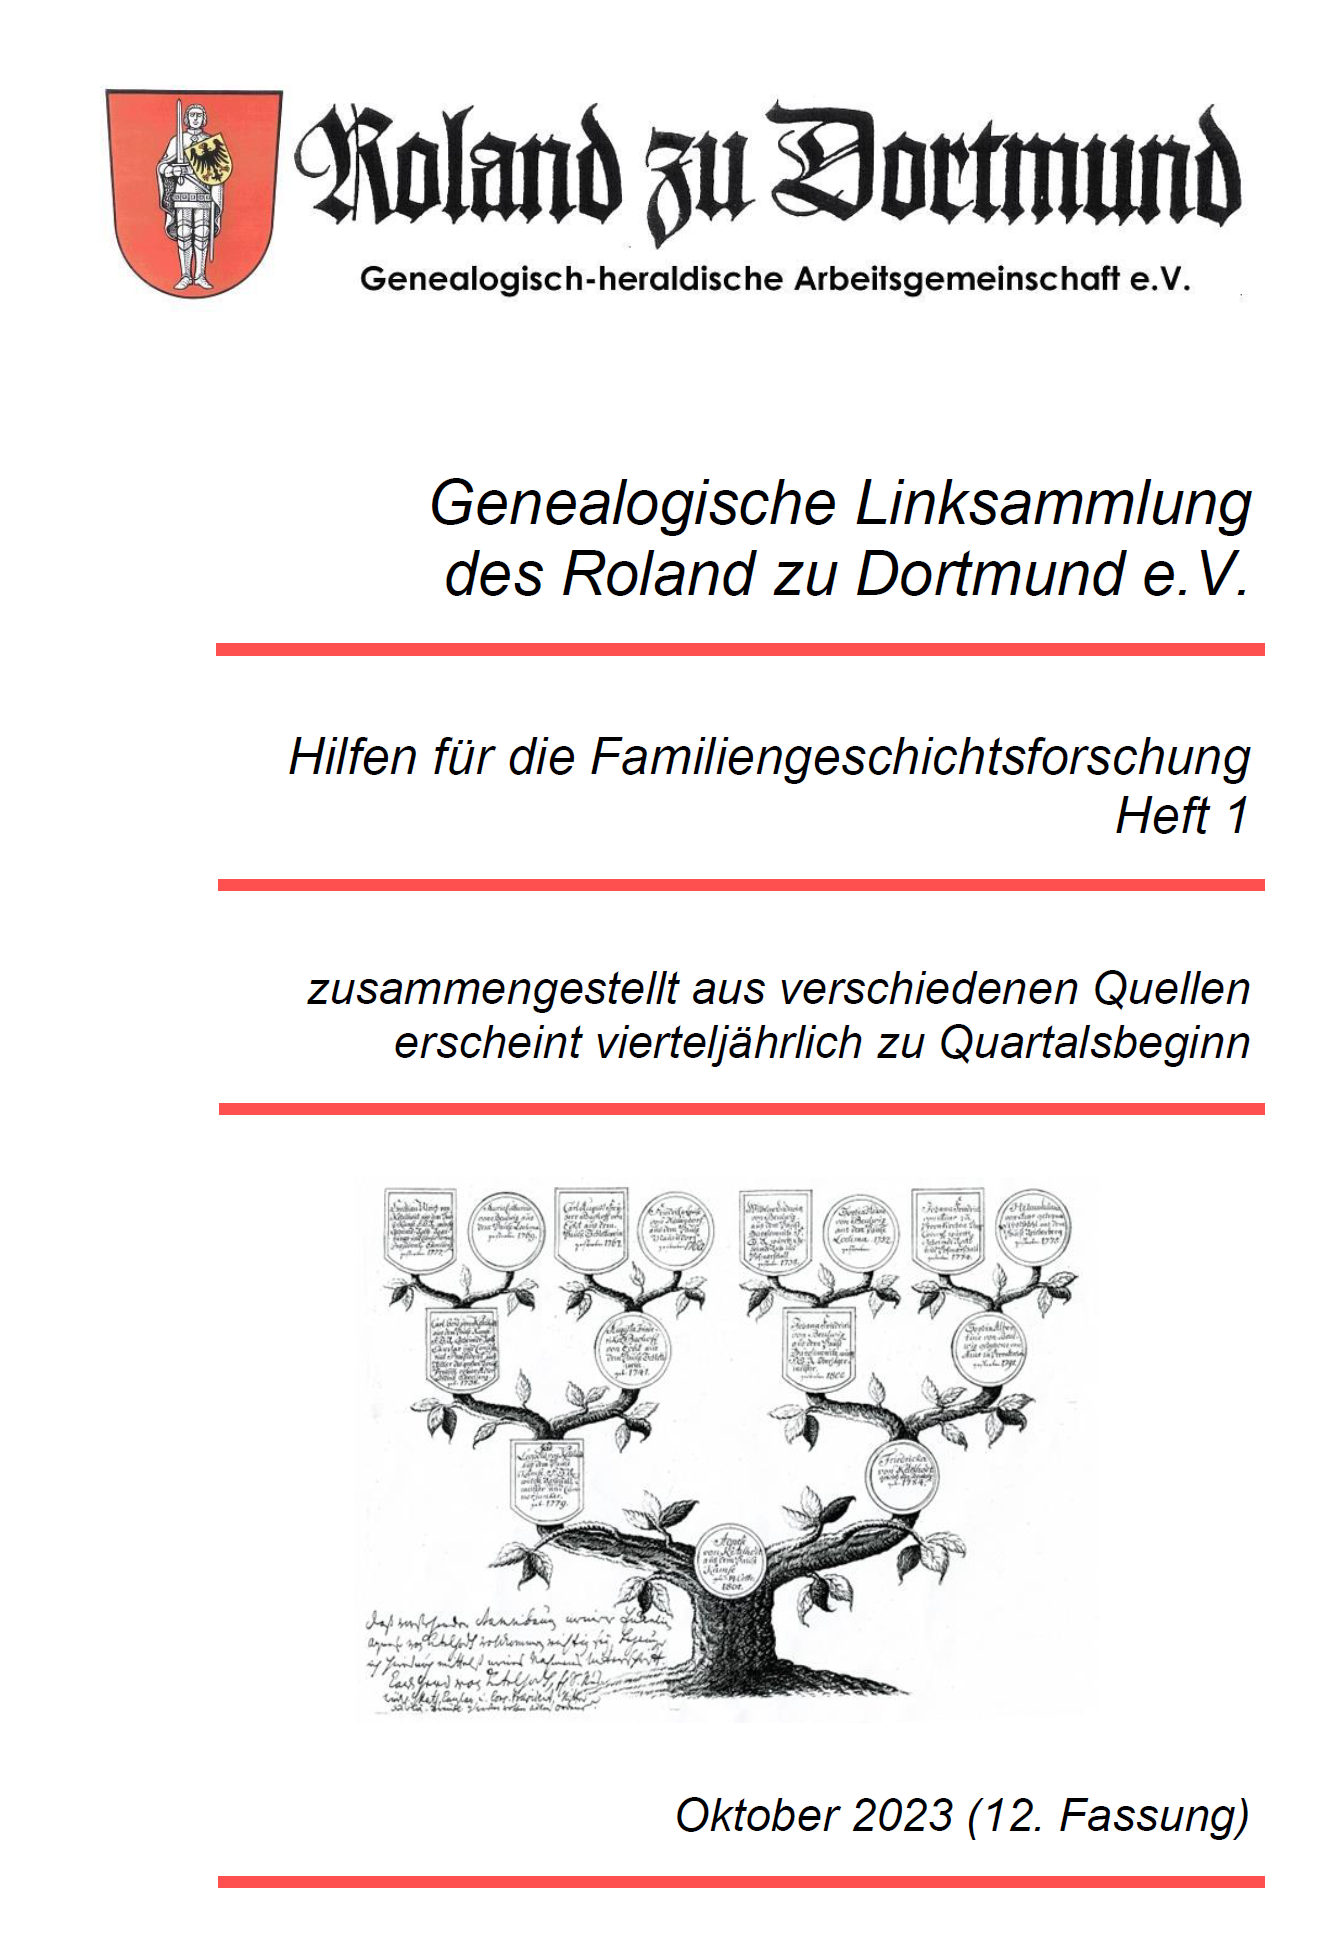 RzD-Forschungshilfen Heft 01 - Genealogische Linksammlung des Roland zu Dortmund